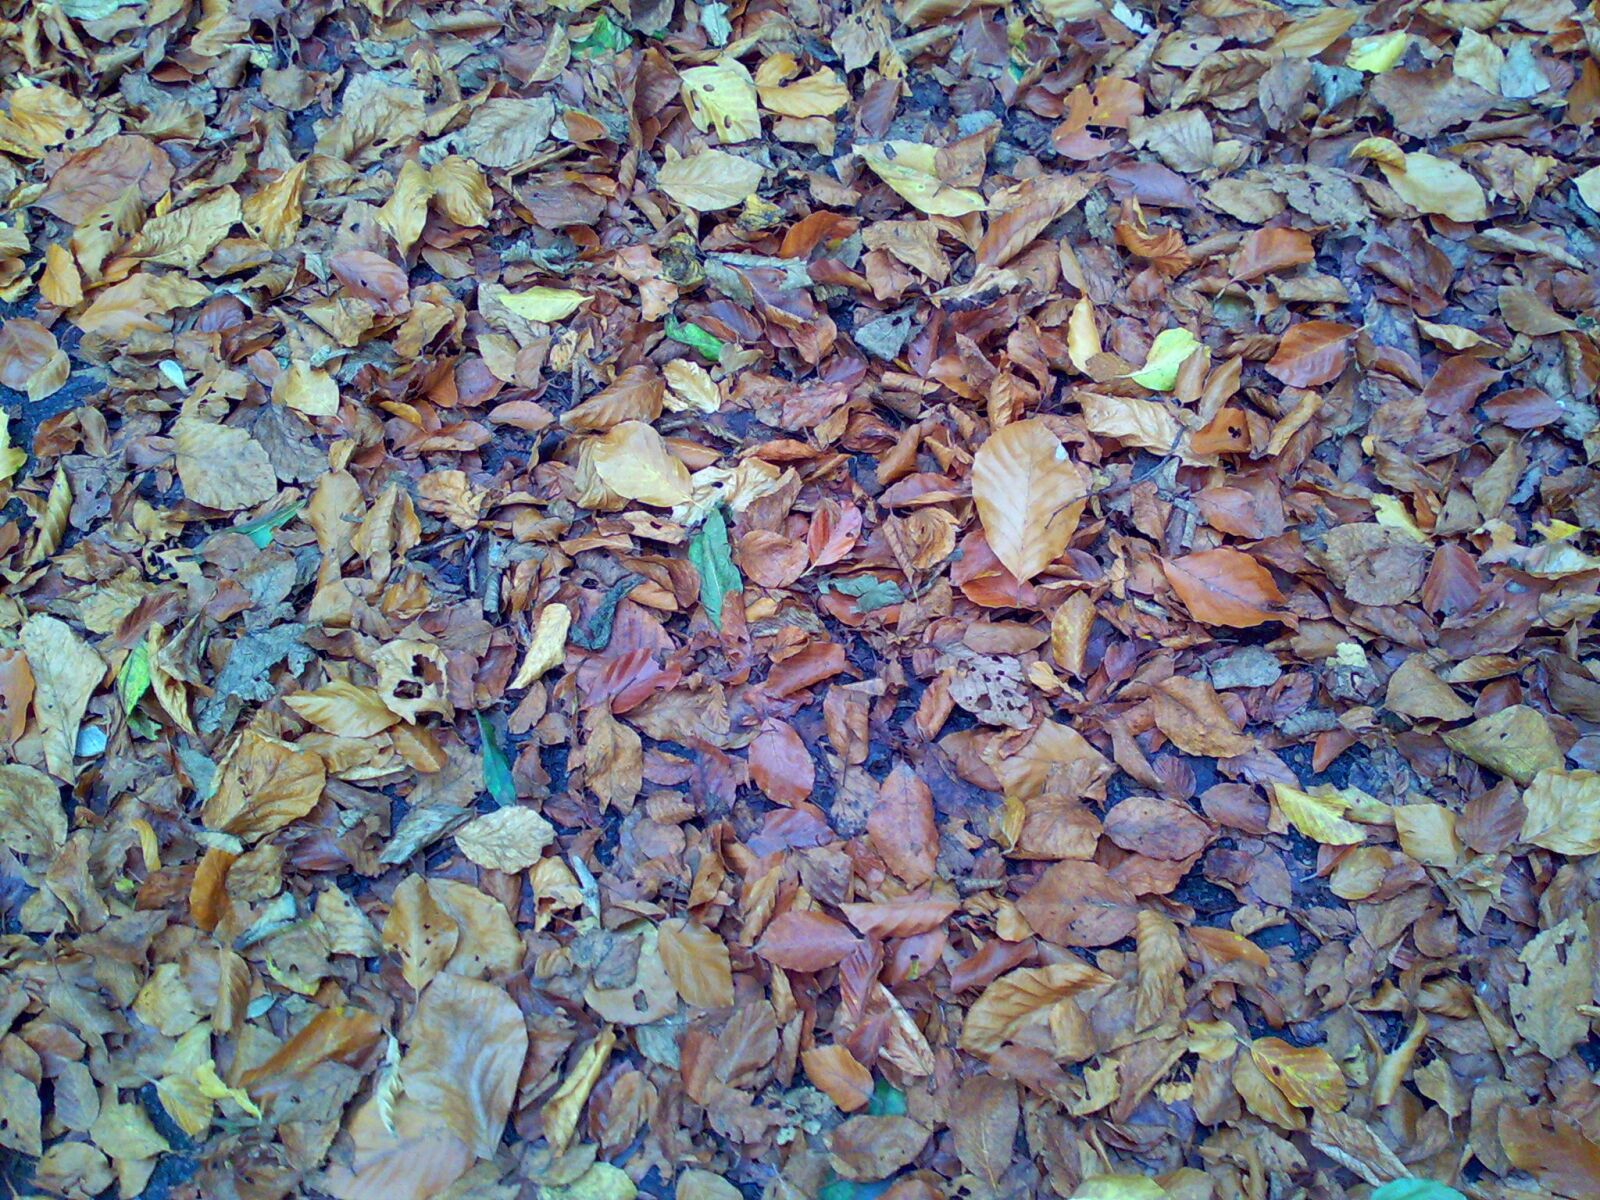 Nokia E90 sample photo. Autumn, leaves, fall, foliage photography